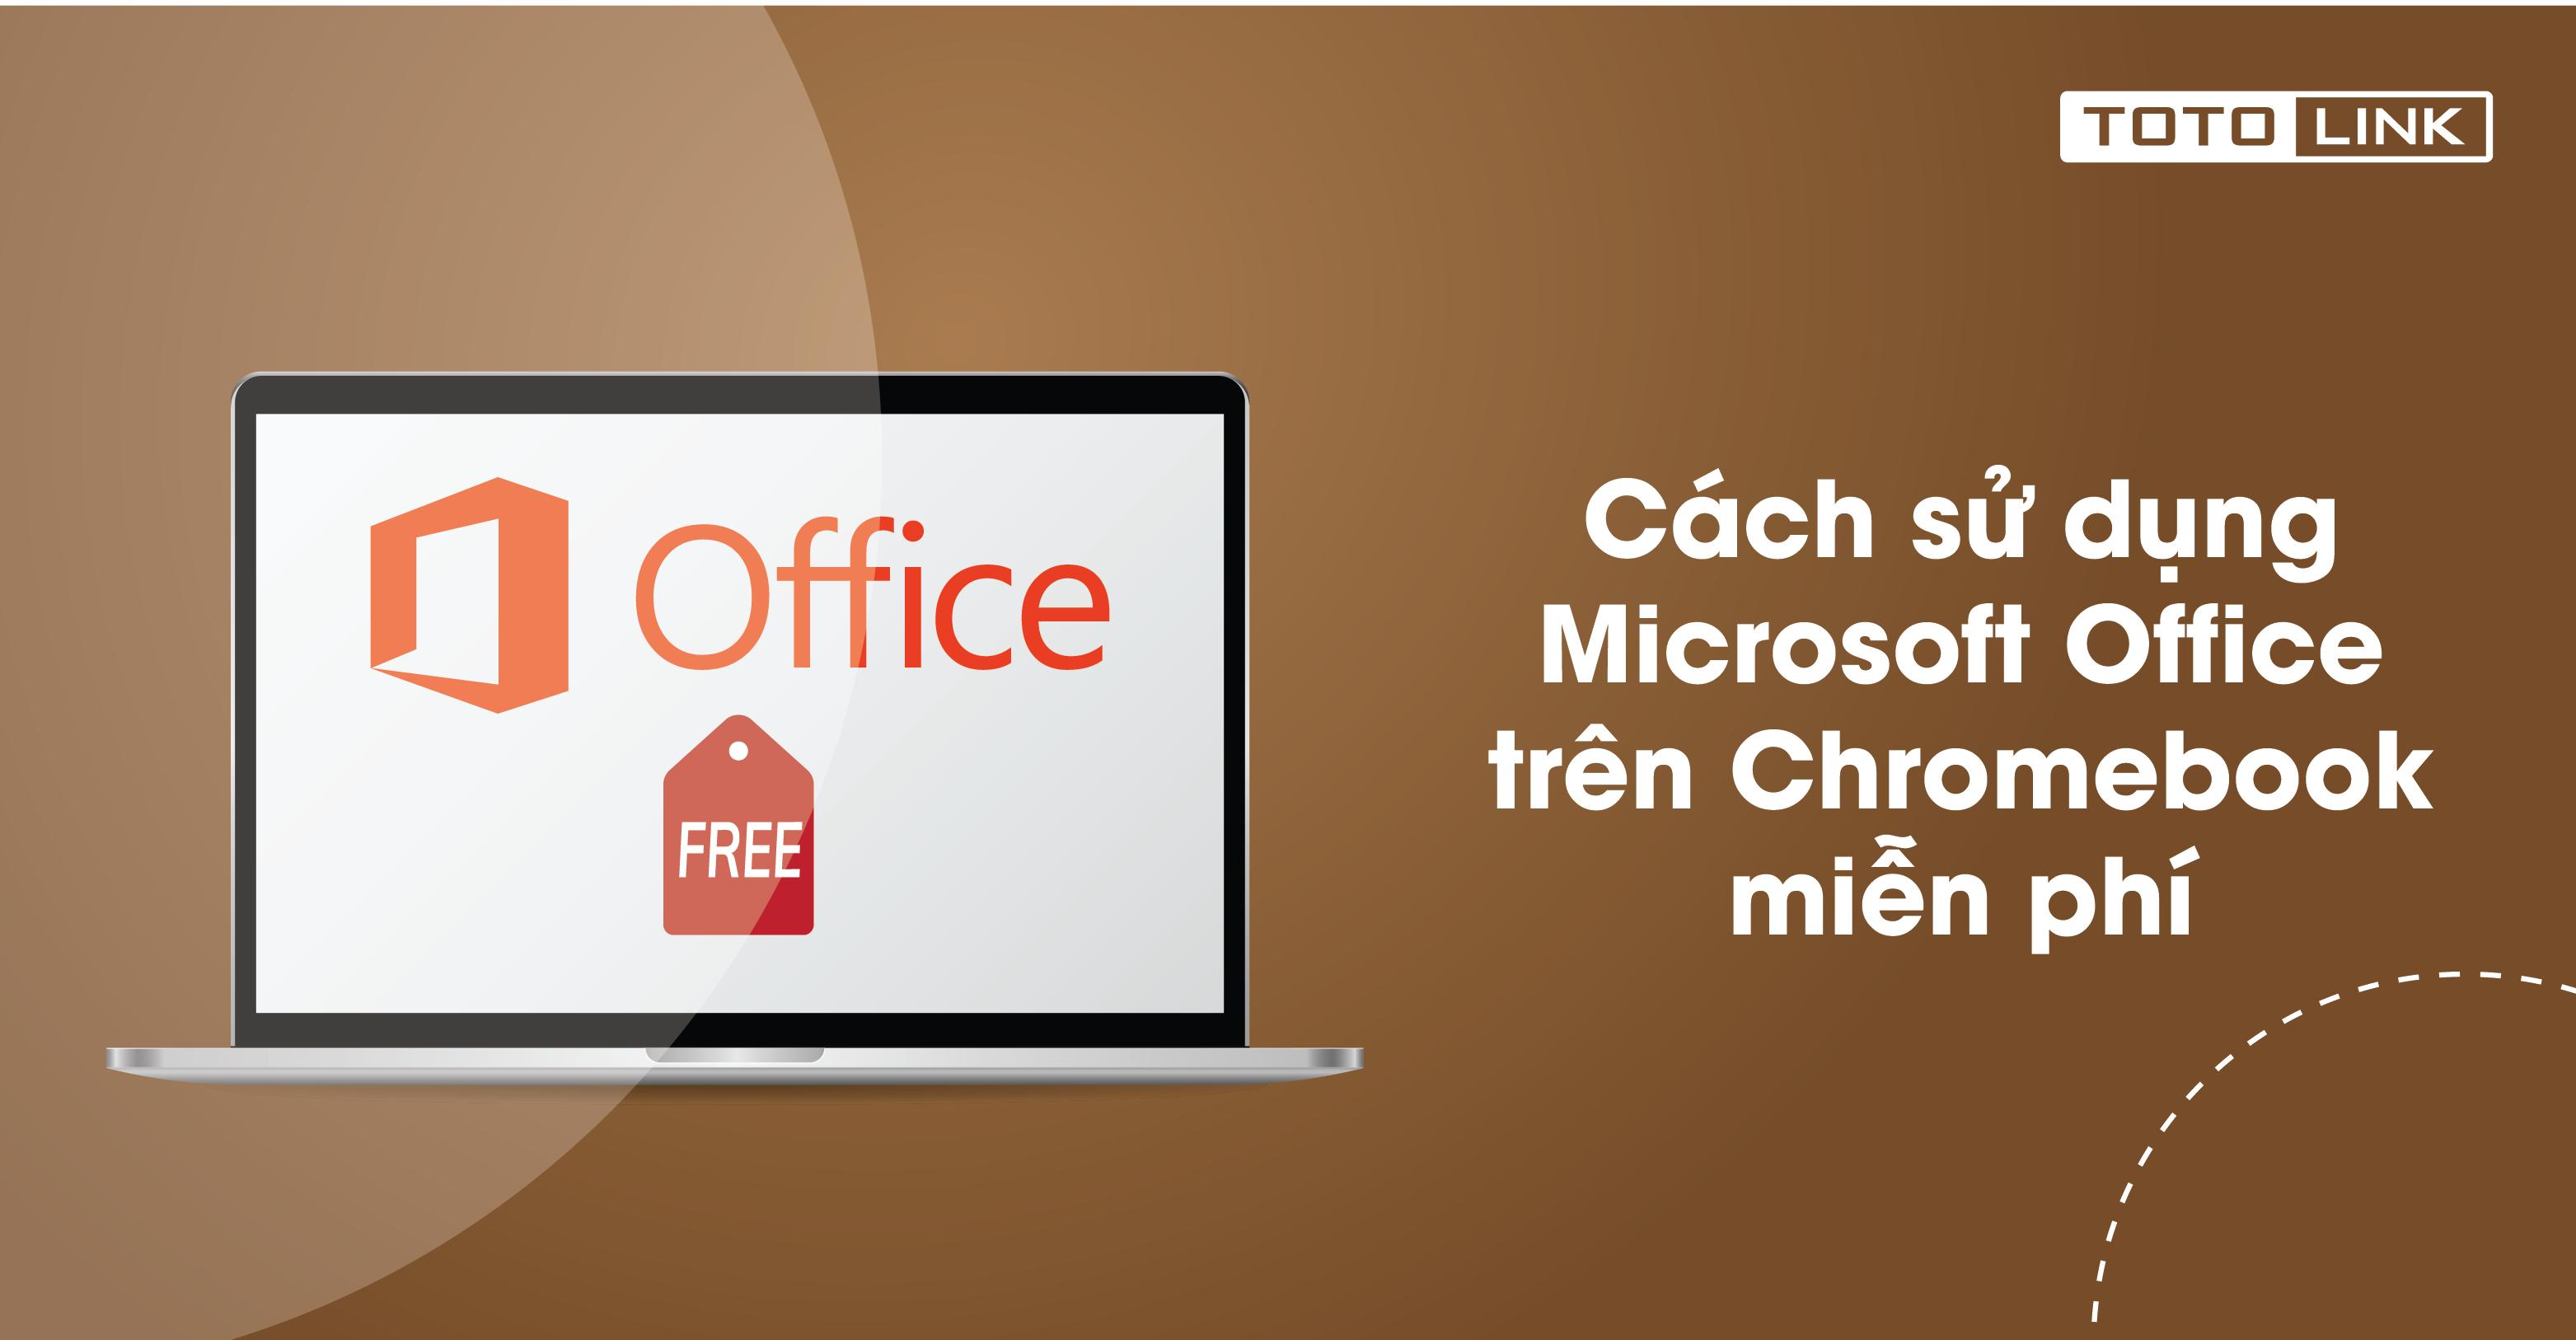 Cách sử dụng Microsoft Office trên Chromebook miễn phí bạn không nên bỏ qua  - TOTOLINK Việt Nam